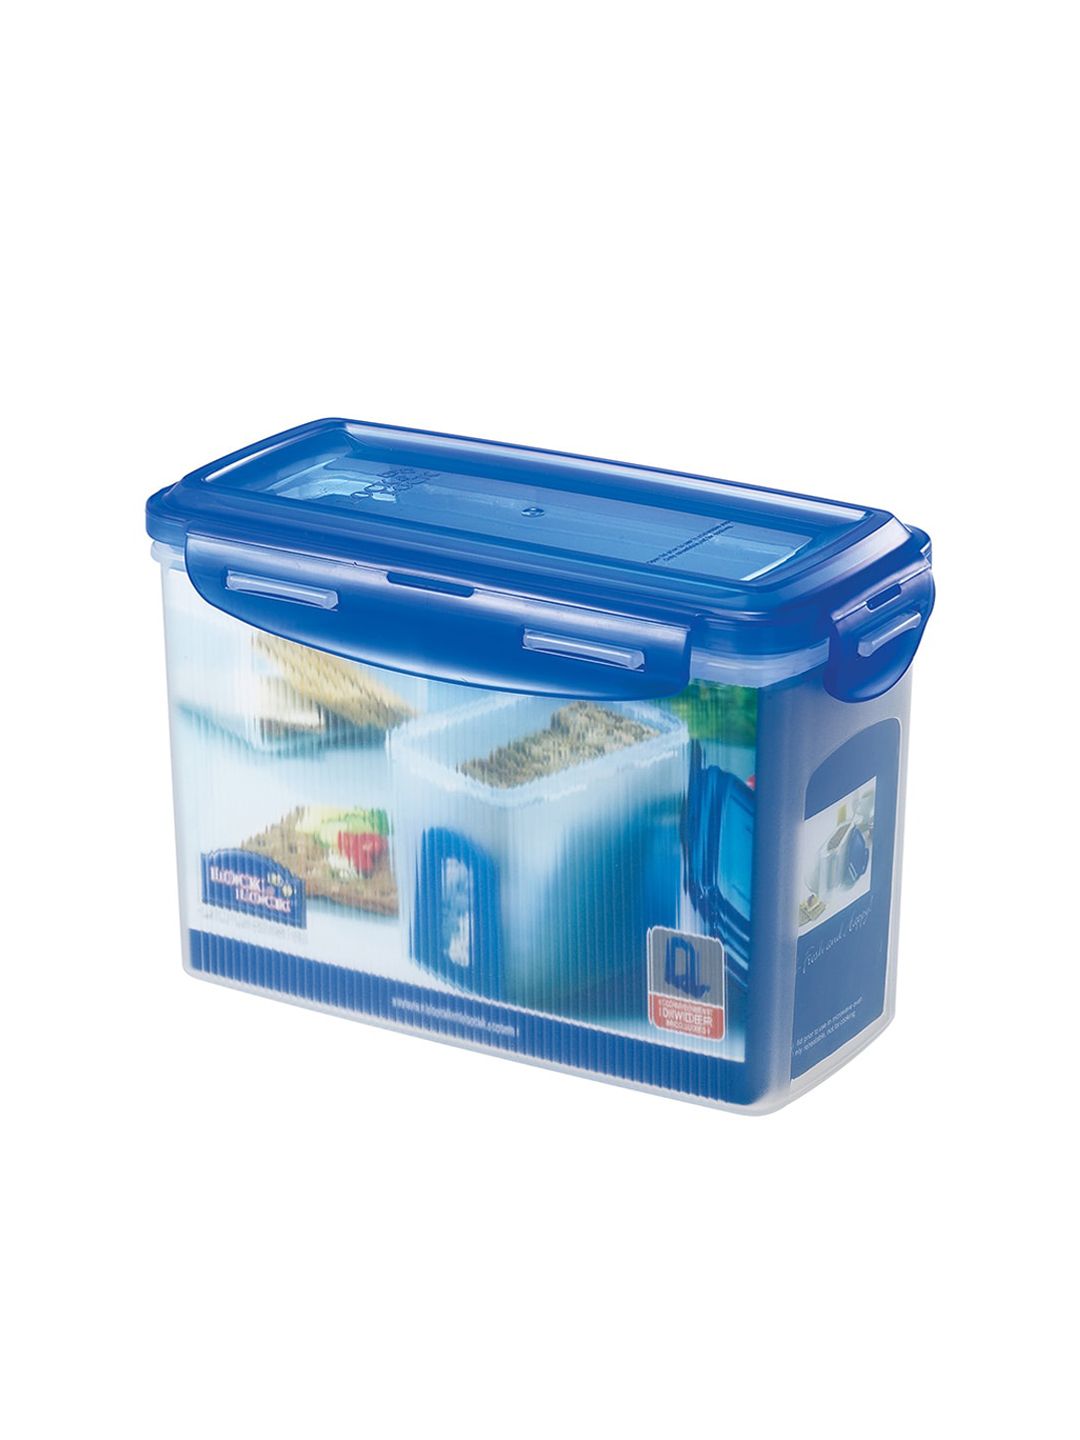 Lock & Lock Transparent & Blue Solid Plastic Airtight Food Storage Container 1.5L Price in India